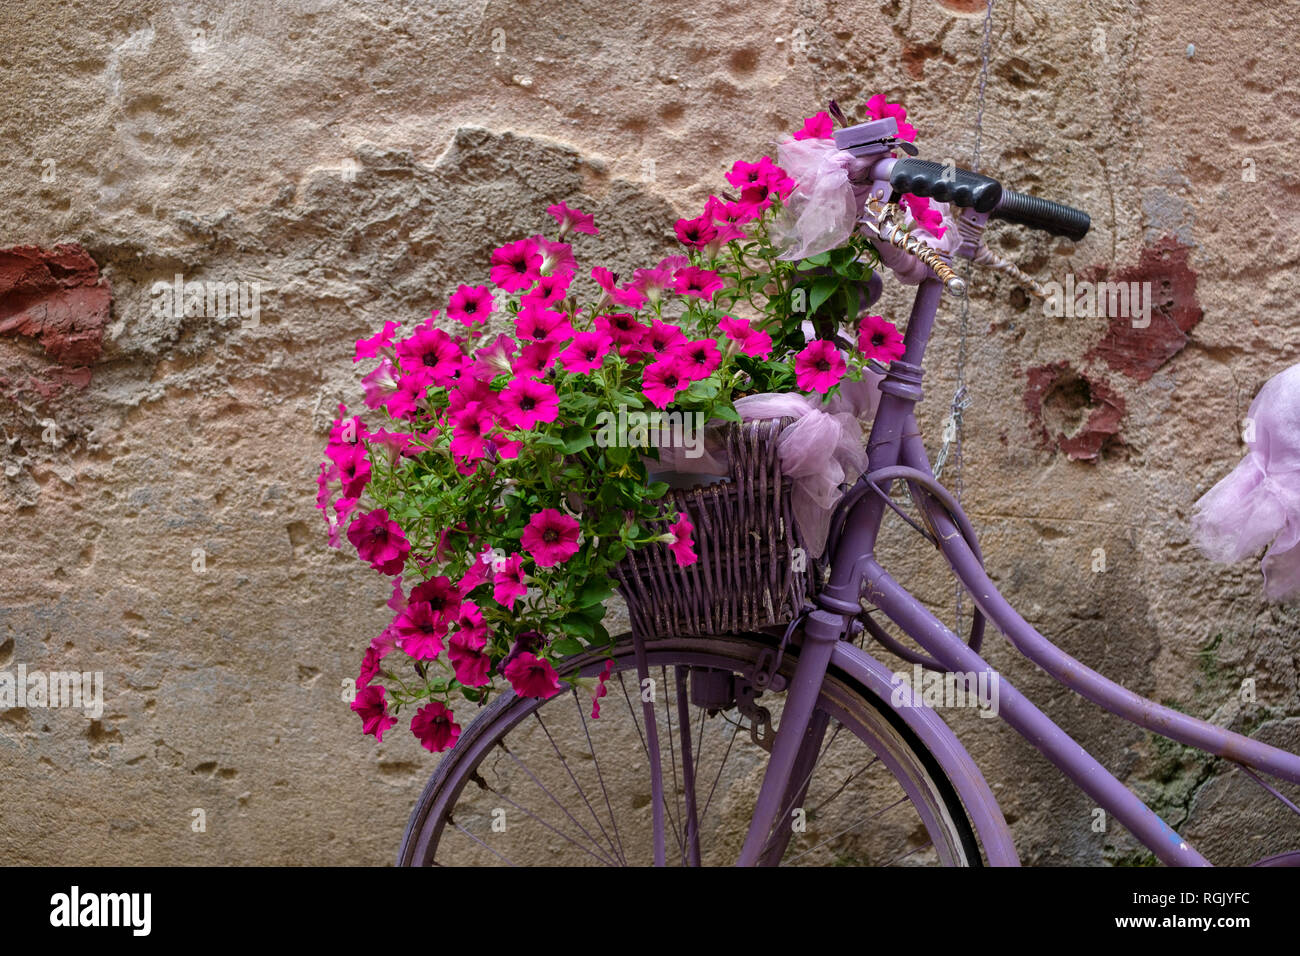 L'Italia, la vecchia bicicletta con fiori Foto Stock